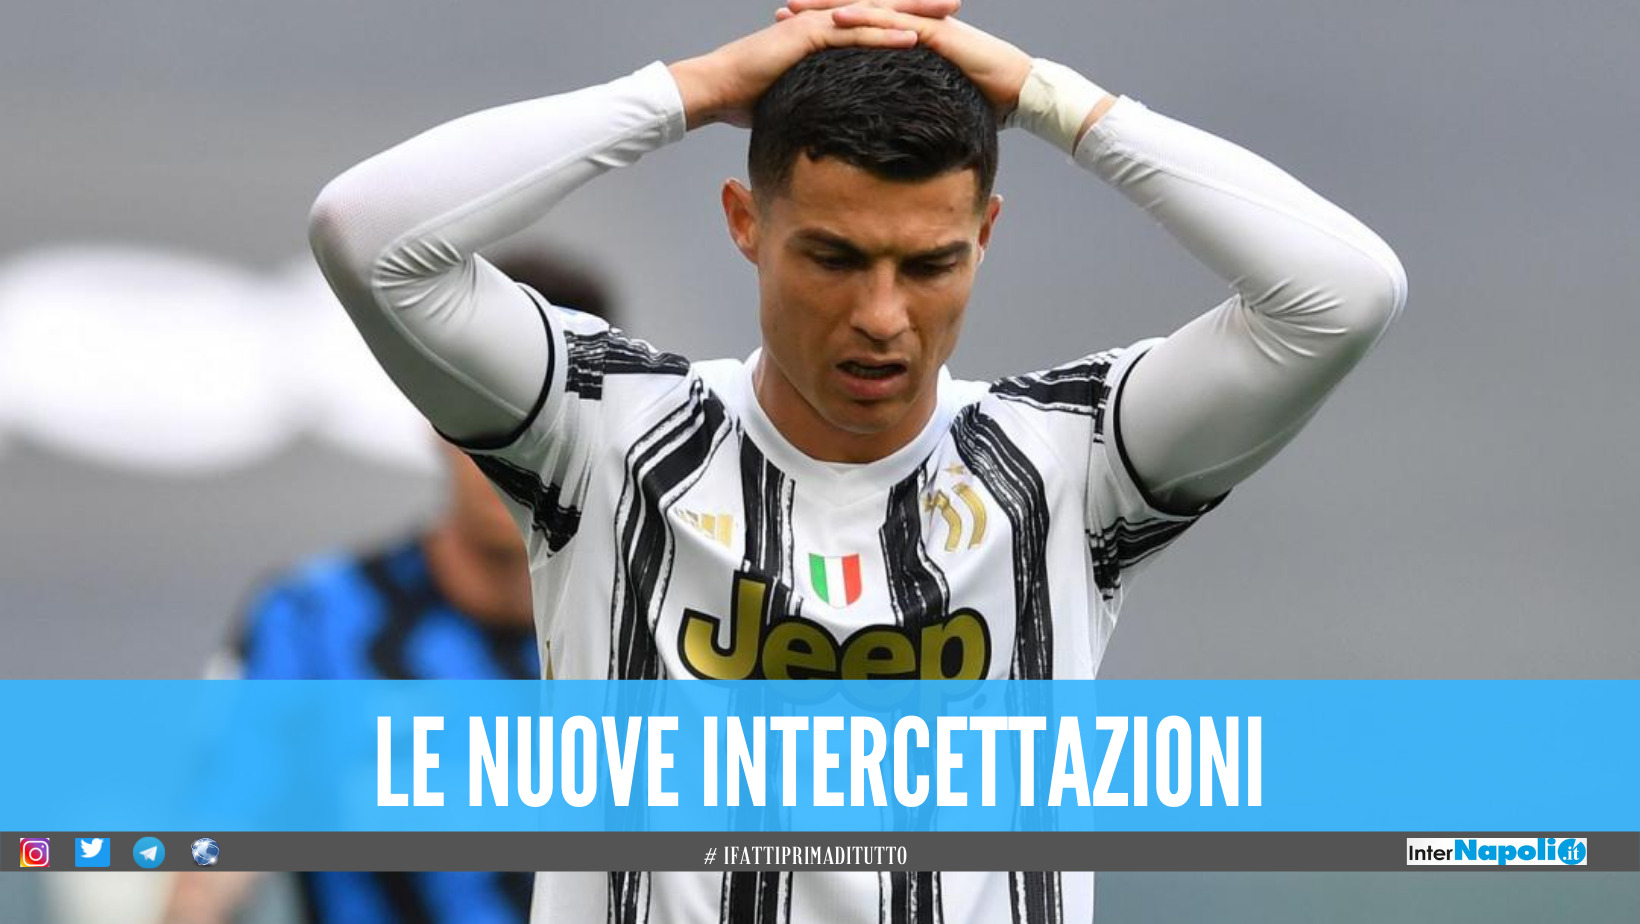 Caso Juventus, nuove intercettazioni sulla 'carta' di Ronaldo: «Se viene fuori ci saltano alla gola»